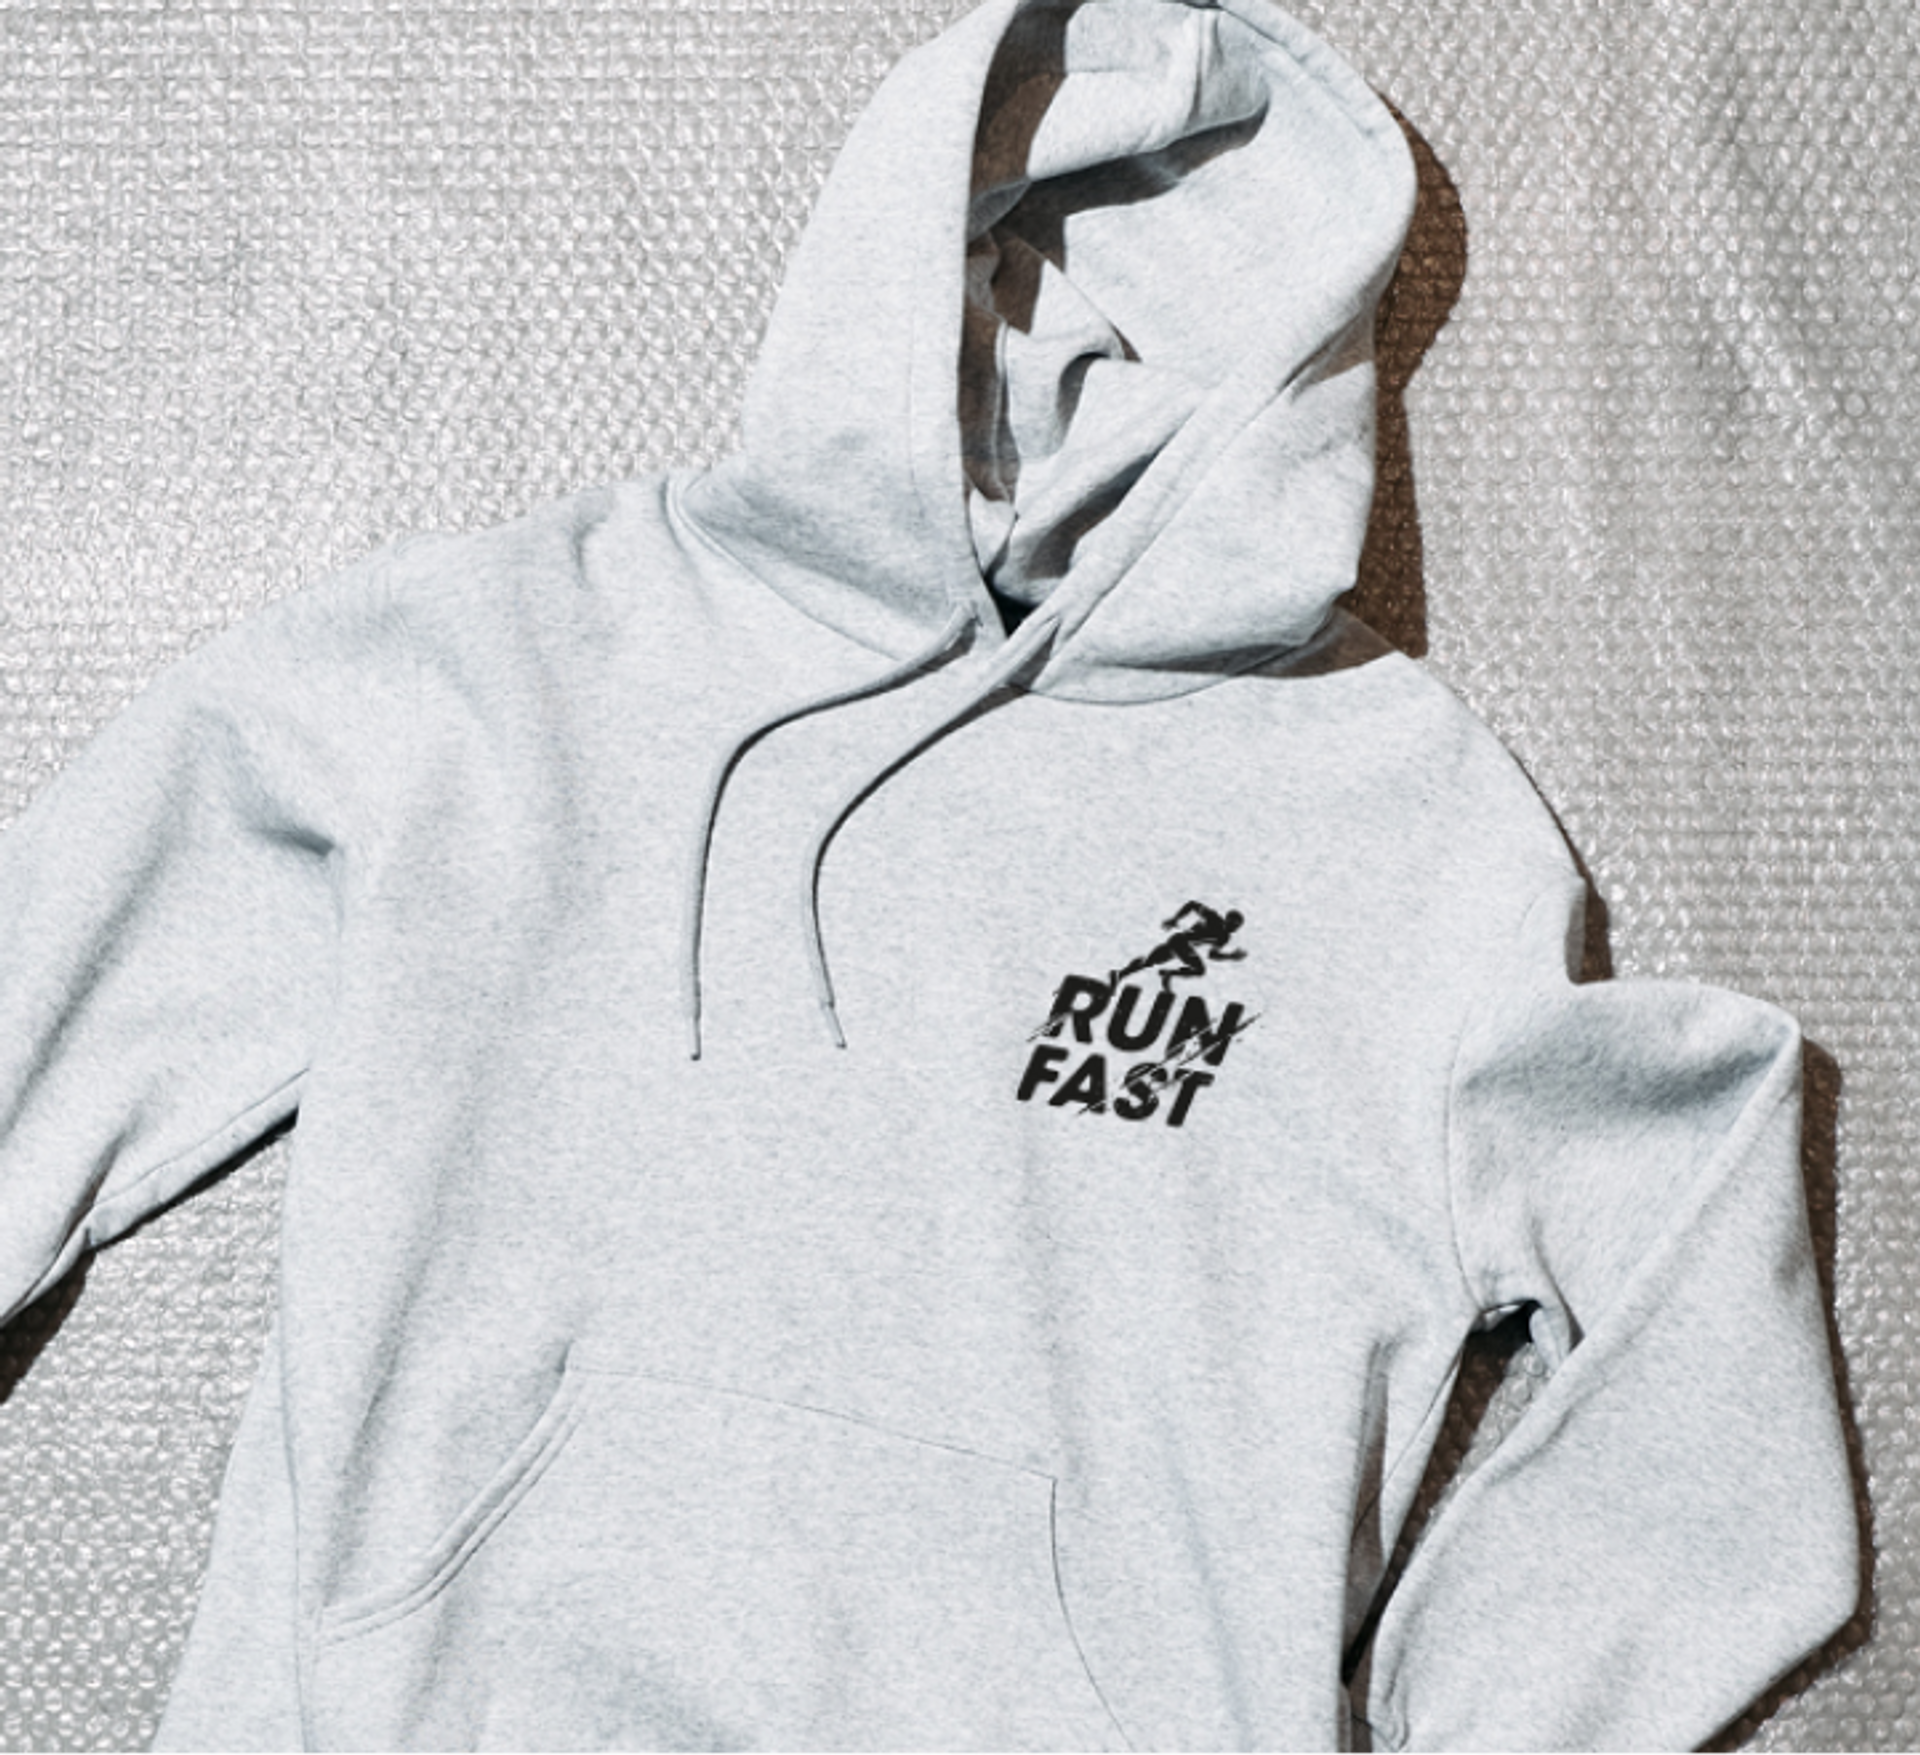 A CReator Studio custom printed hoodie